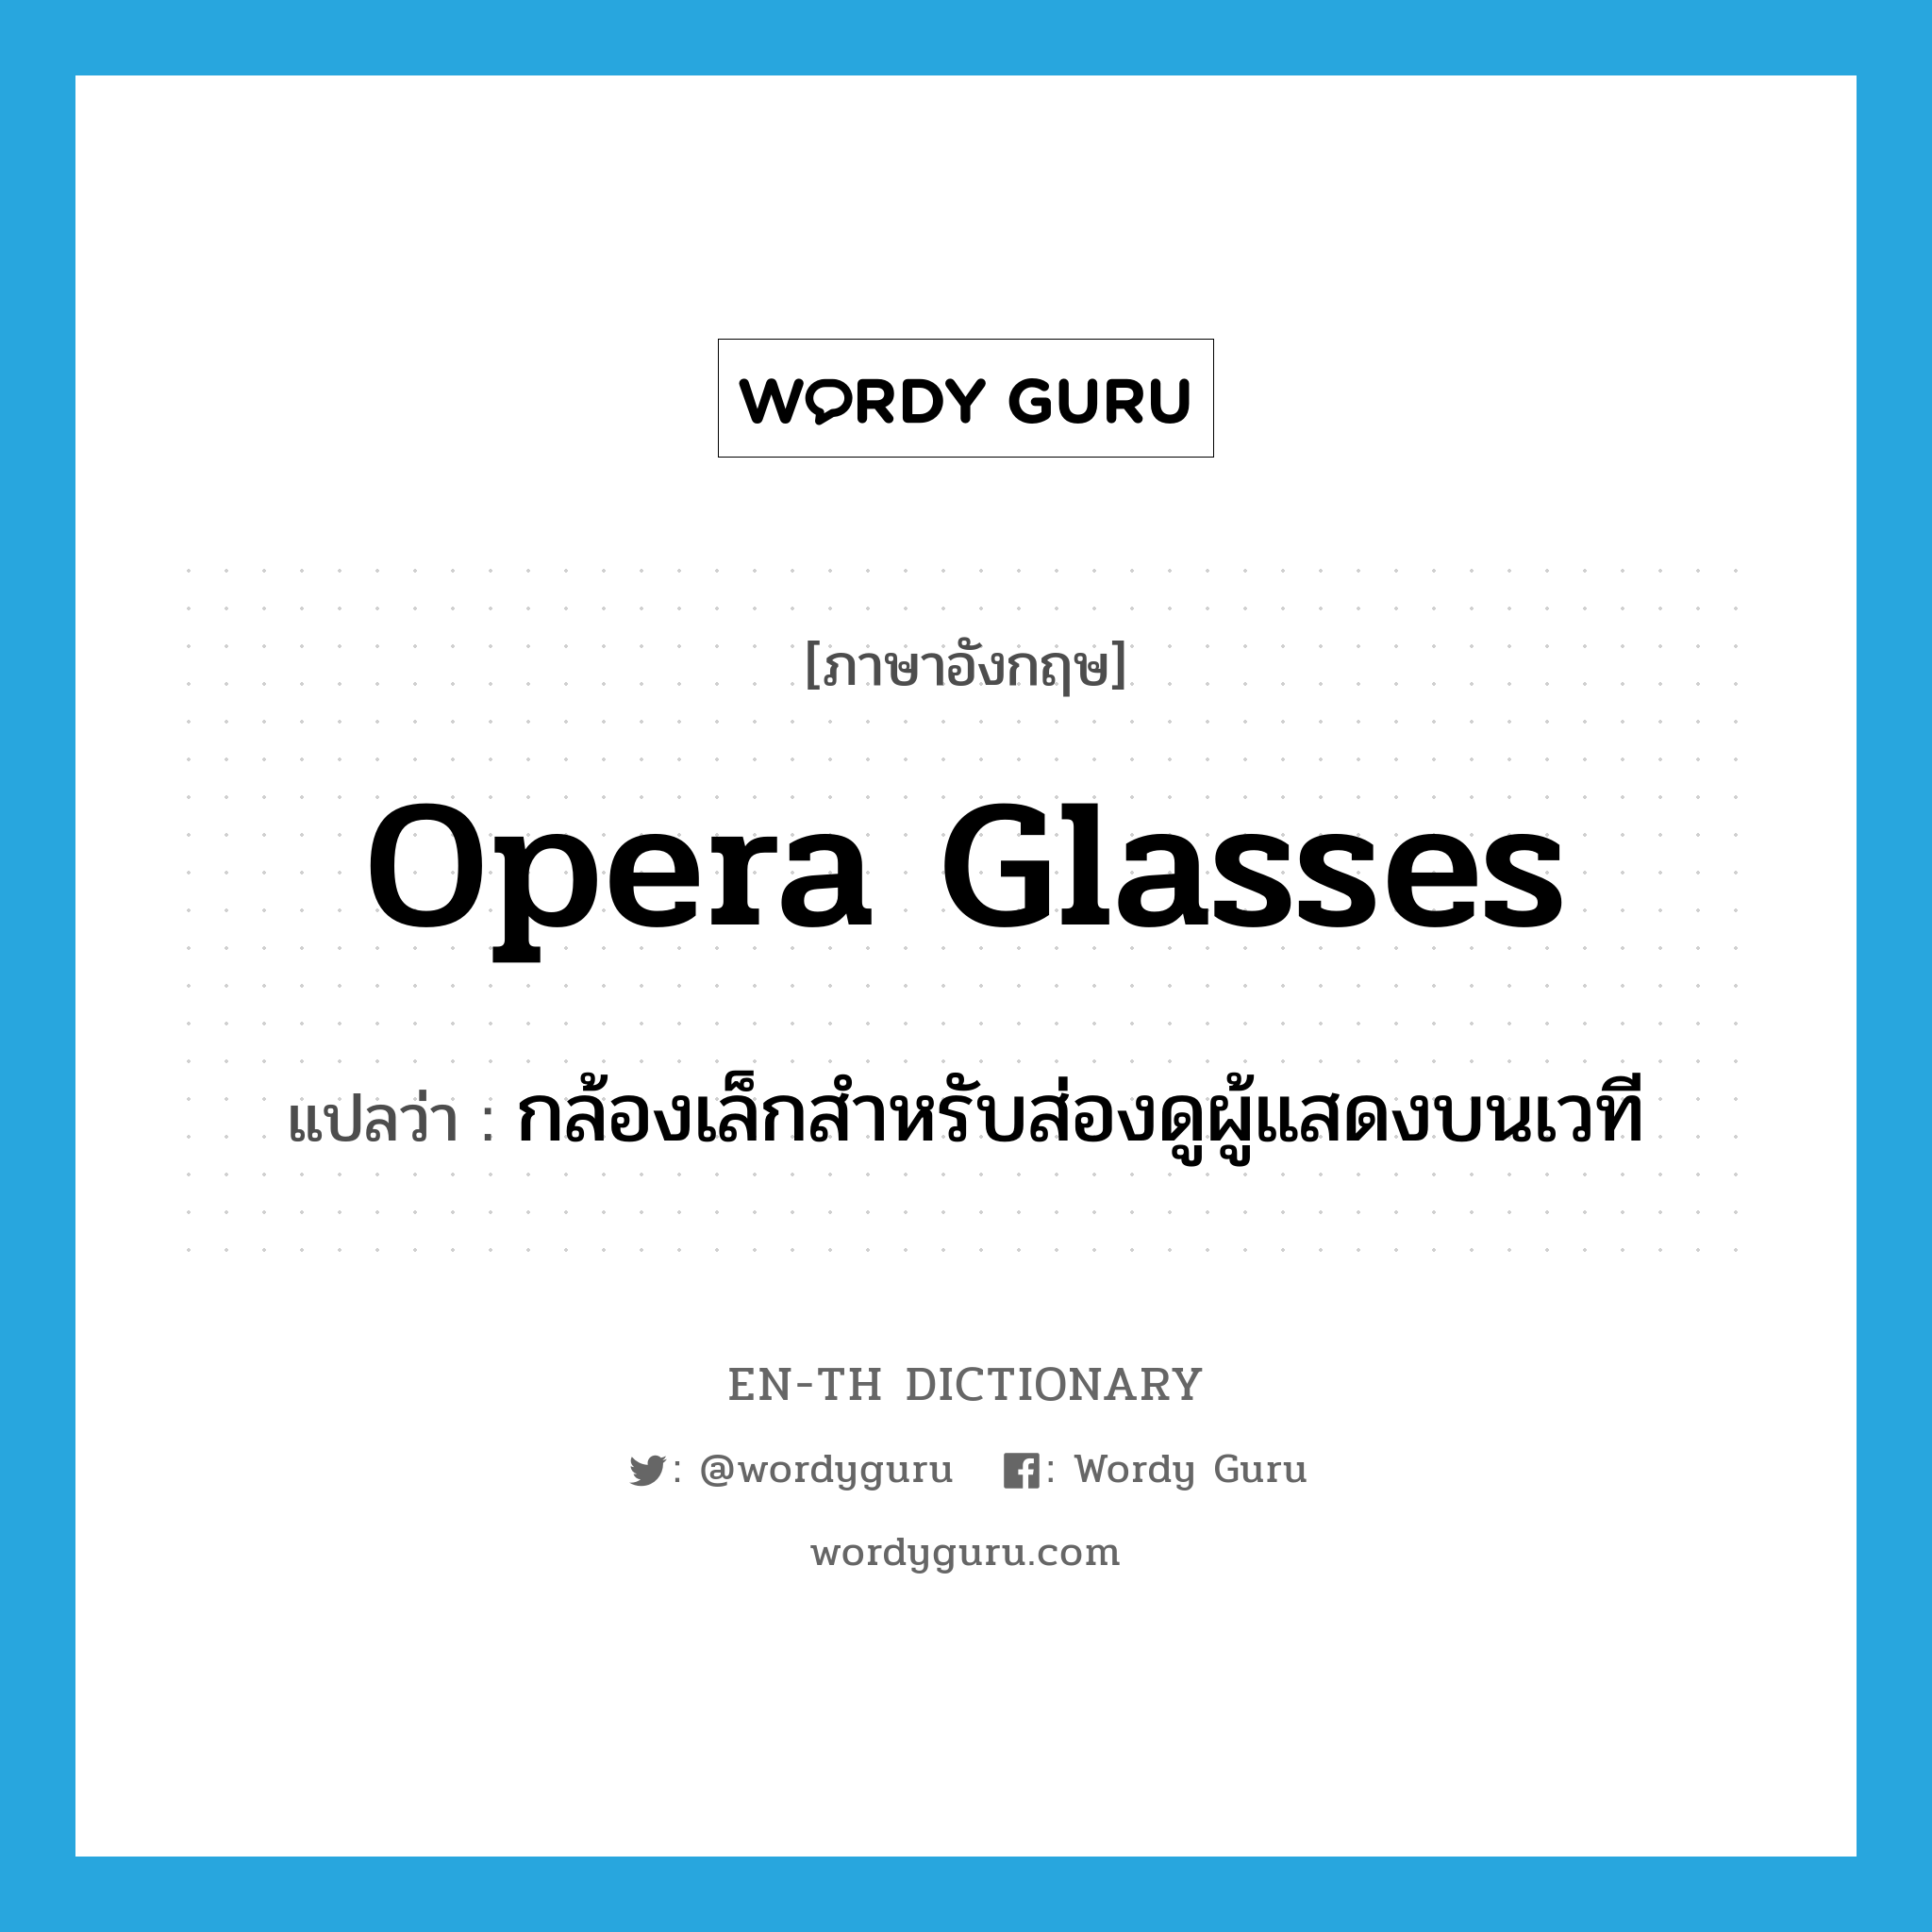 opera glasses แปลว่า?, คำศัพท์ภาษาอังกฤษ opera glasses แปลว่า กล้องเล็กสำหรับส่องดูผู้แสดงบนเวที ประเภท N หมวด N